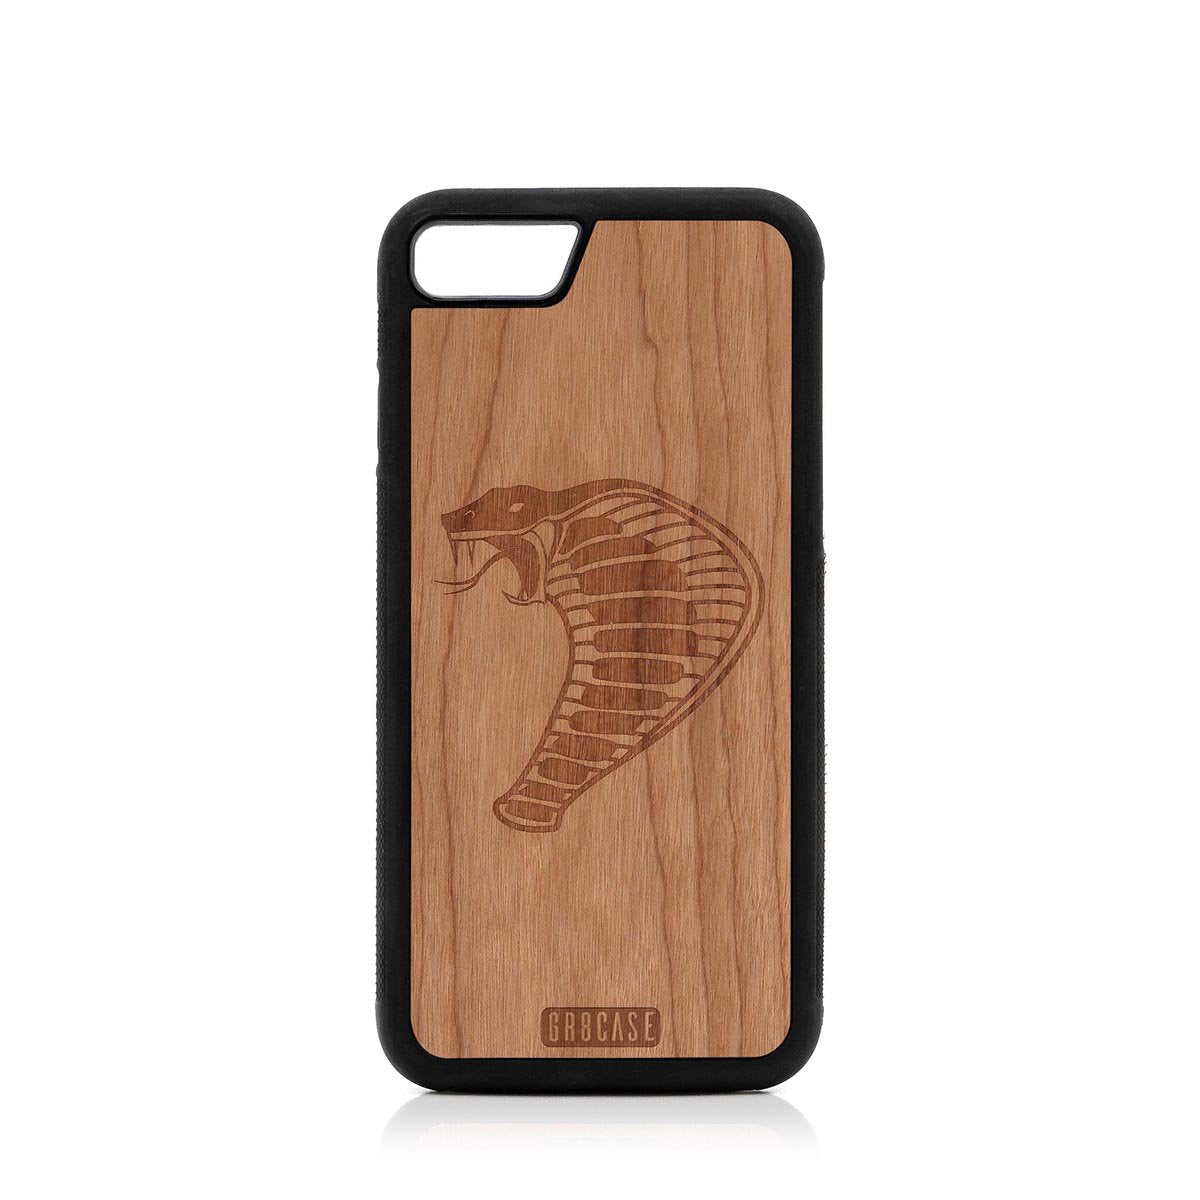 Cobra Design Wood Case For iPhone SE 2020 by GR8CASE